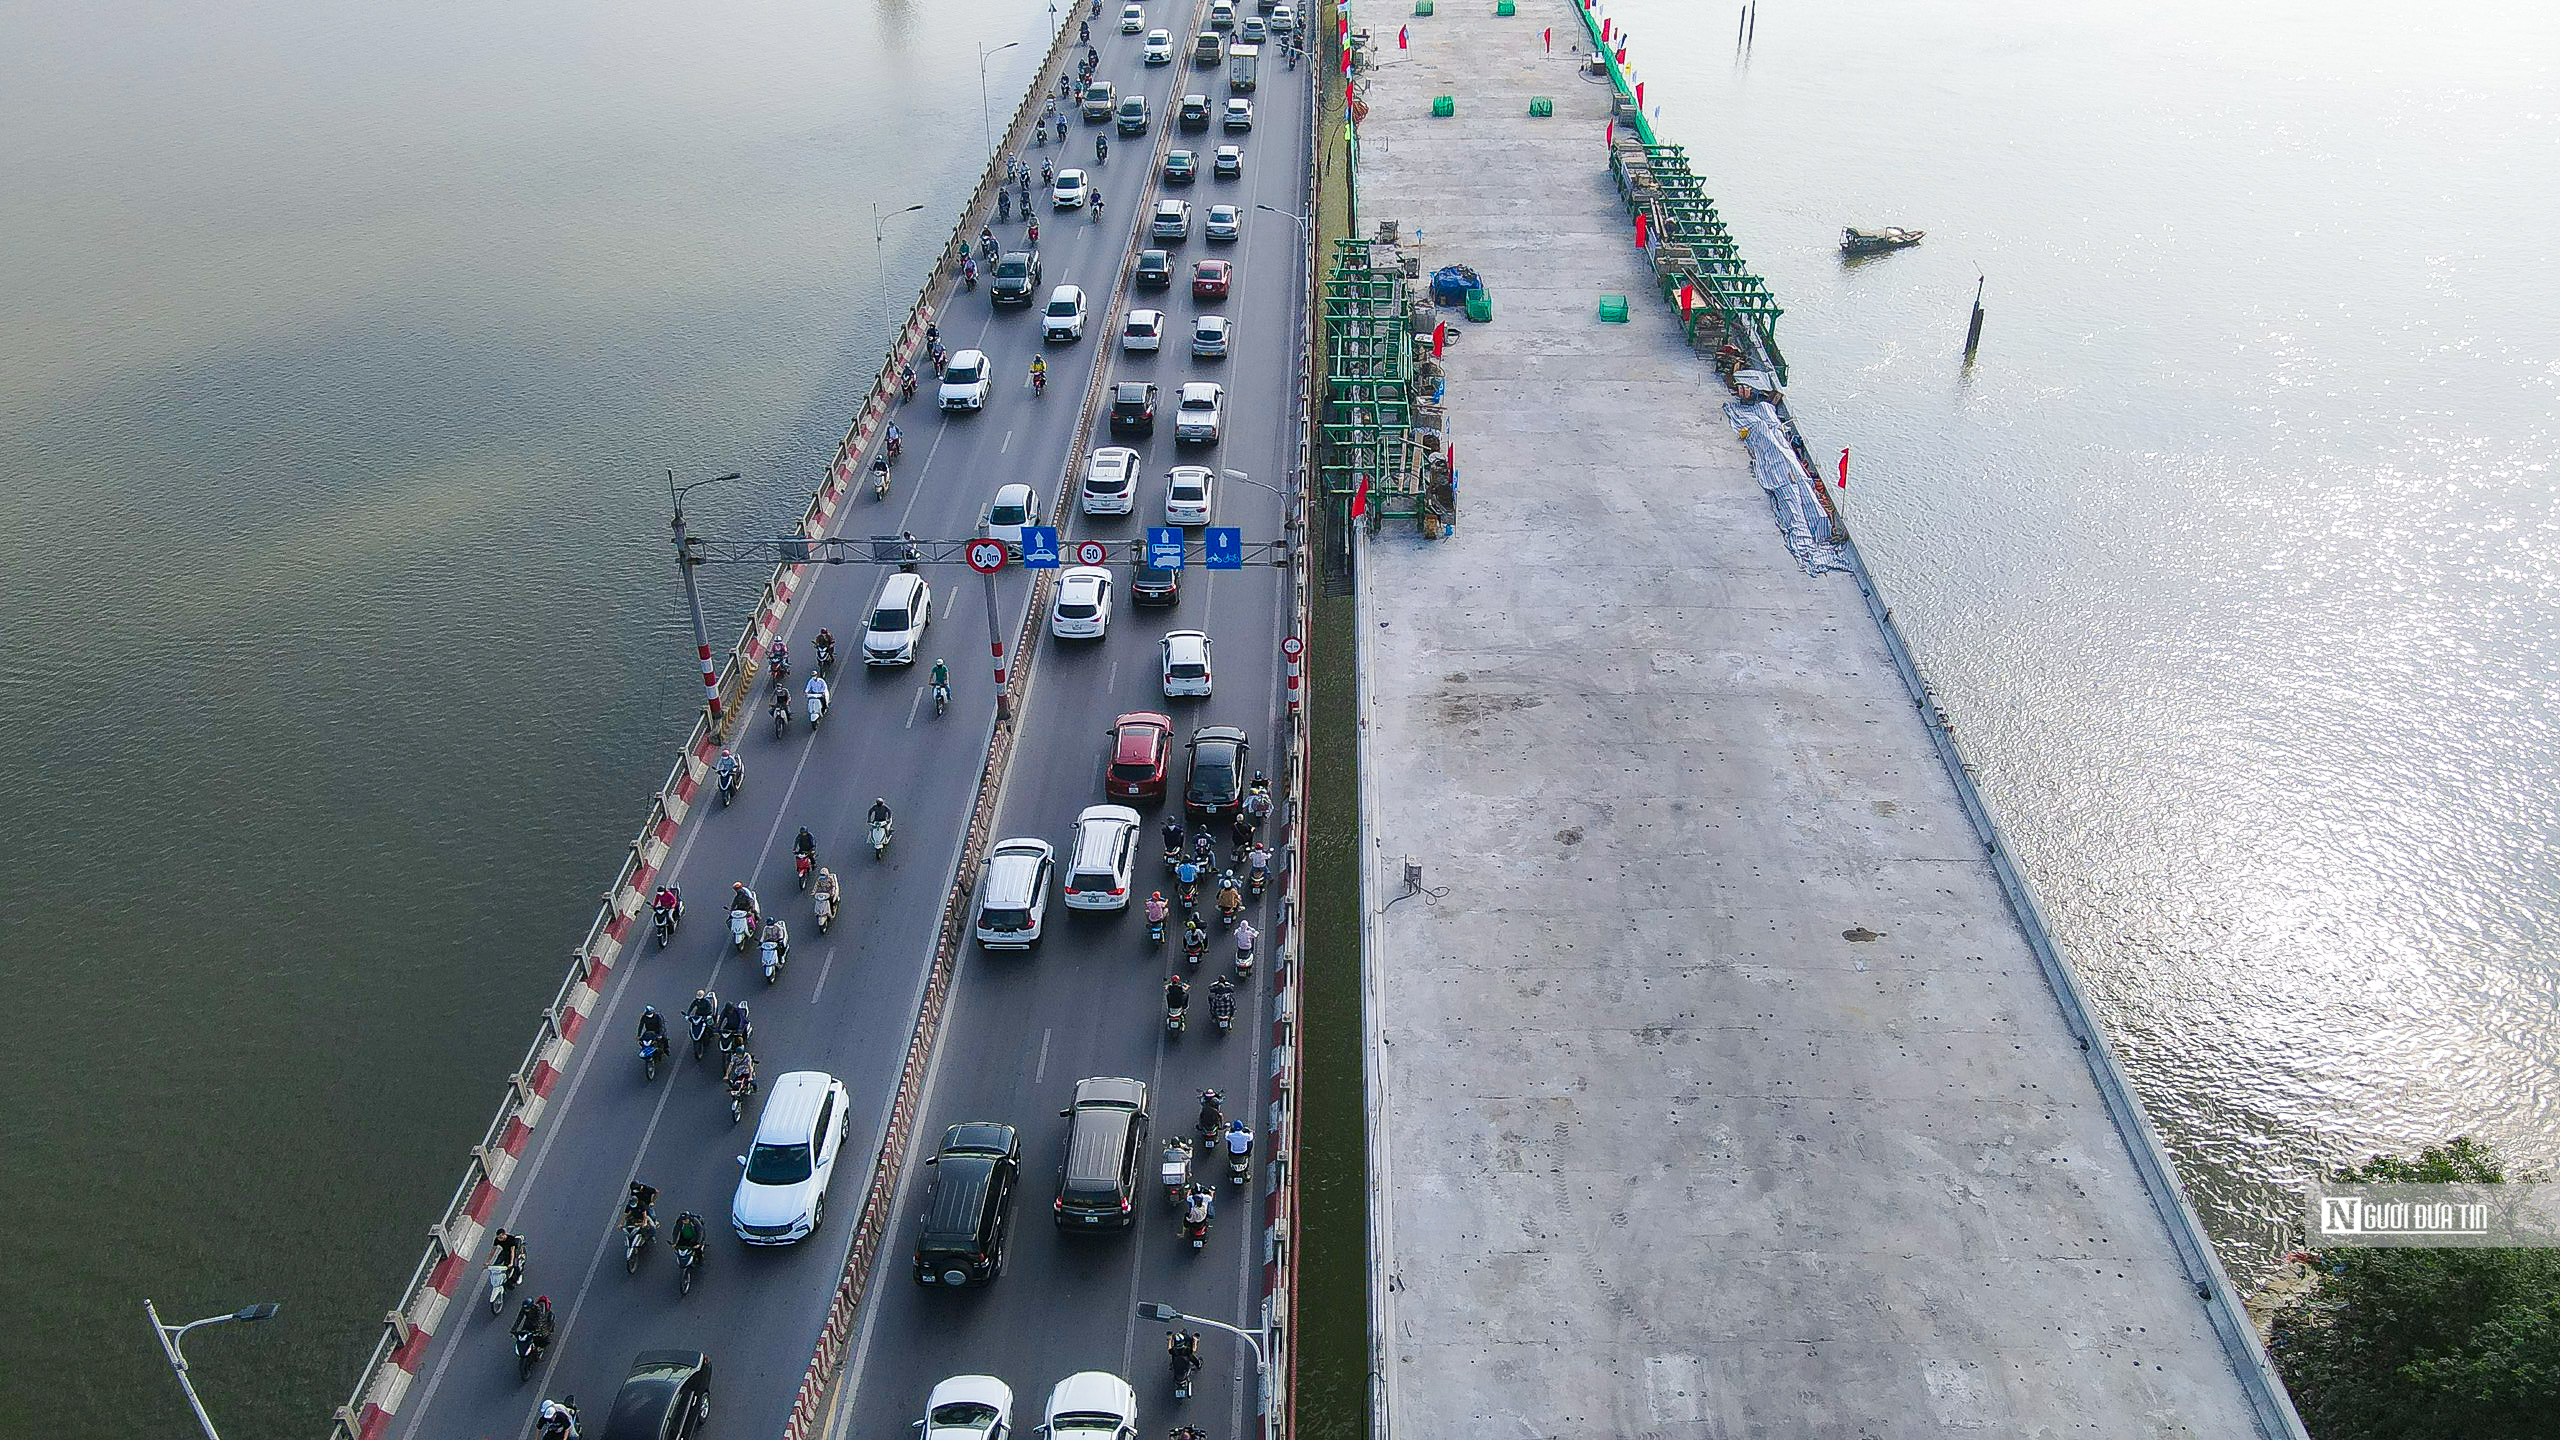 Hợp long cầu Vĩnh Tuy 2 trị giá hơn 2.500 tỷ đồng ở Hà Nội